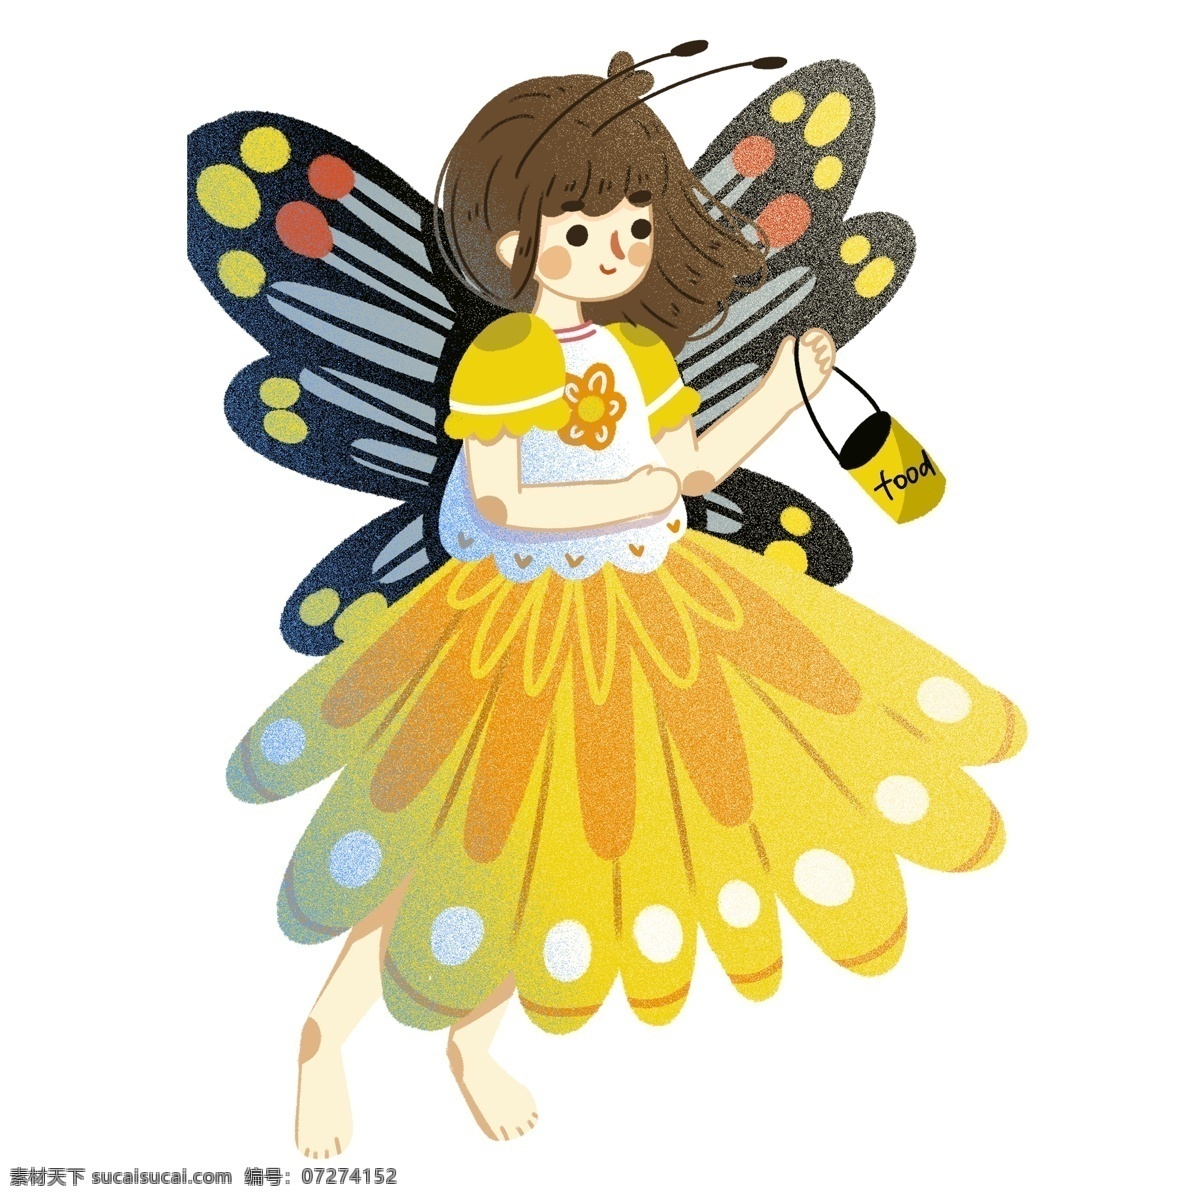 彩绘 可爱 采 花蜜 勤劳 小 蜜蜂 女孩 卡通 儿童 人物 翅膀 小蜜蜂 采蜜 创意设计